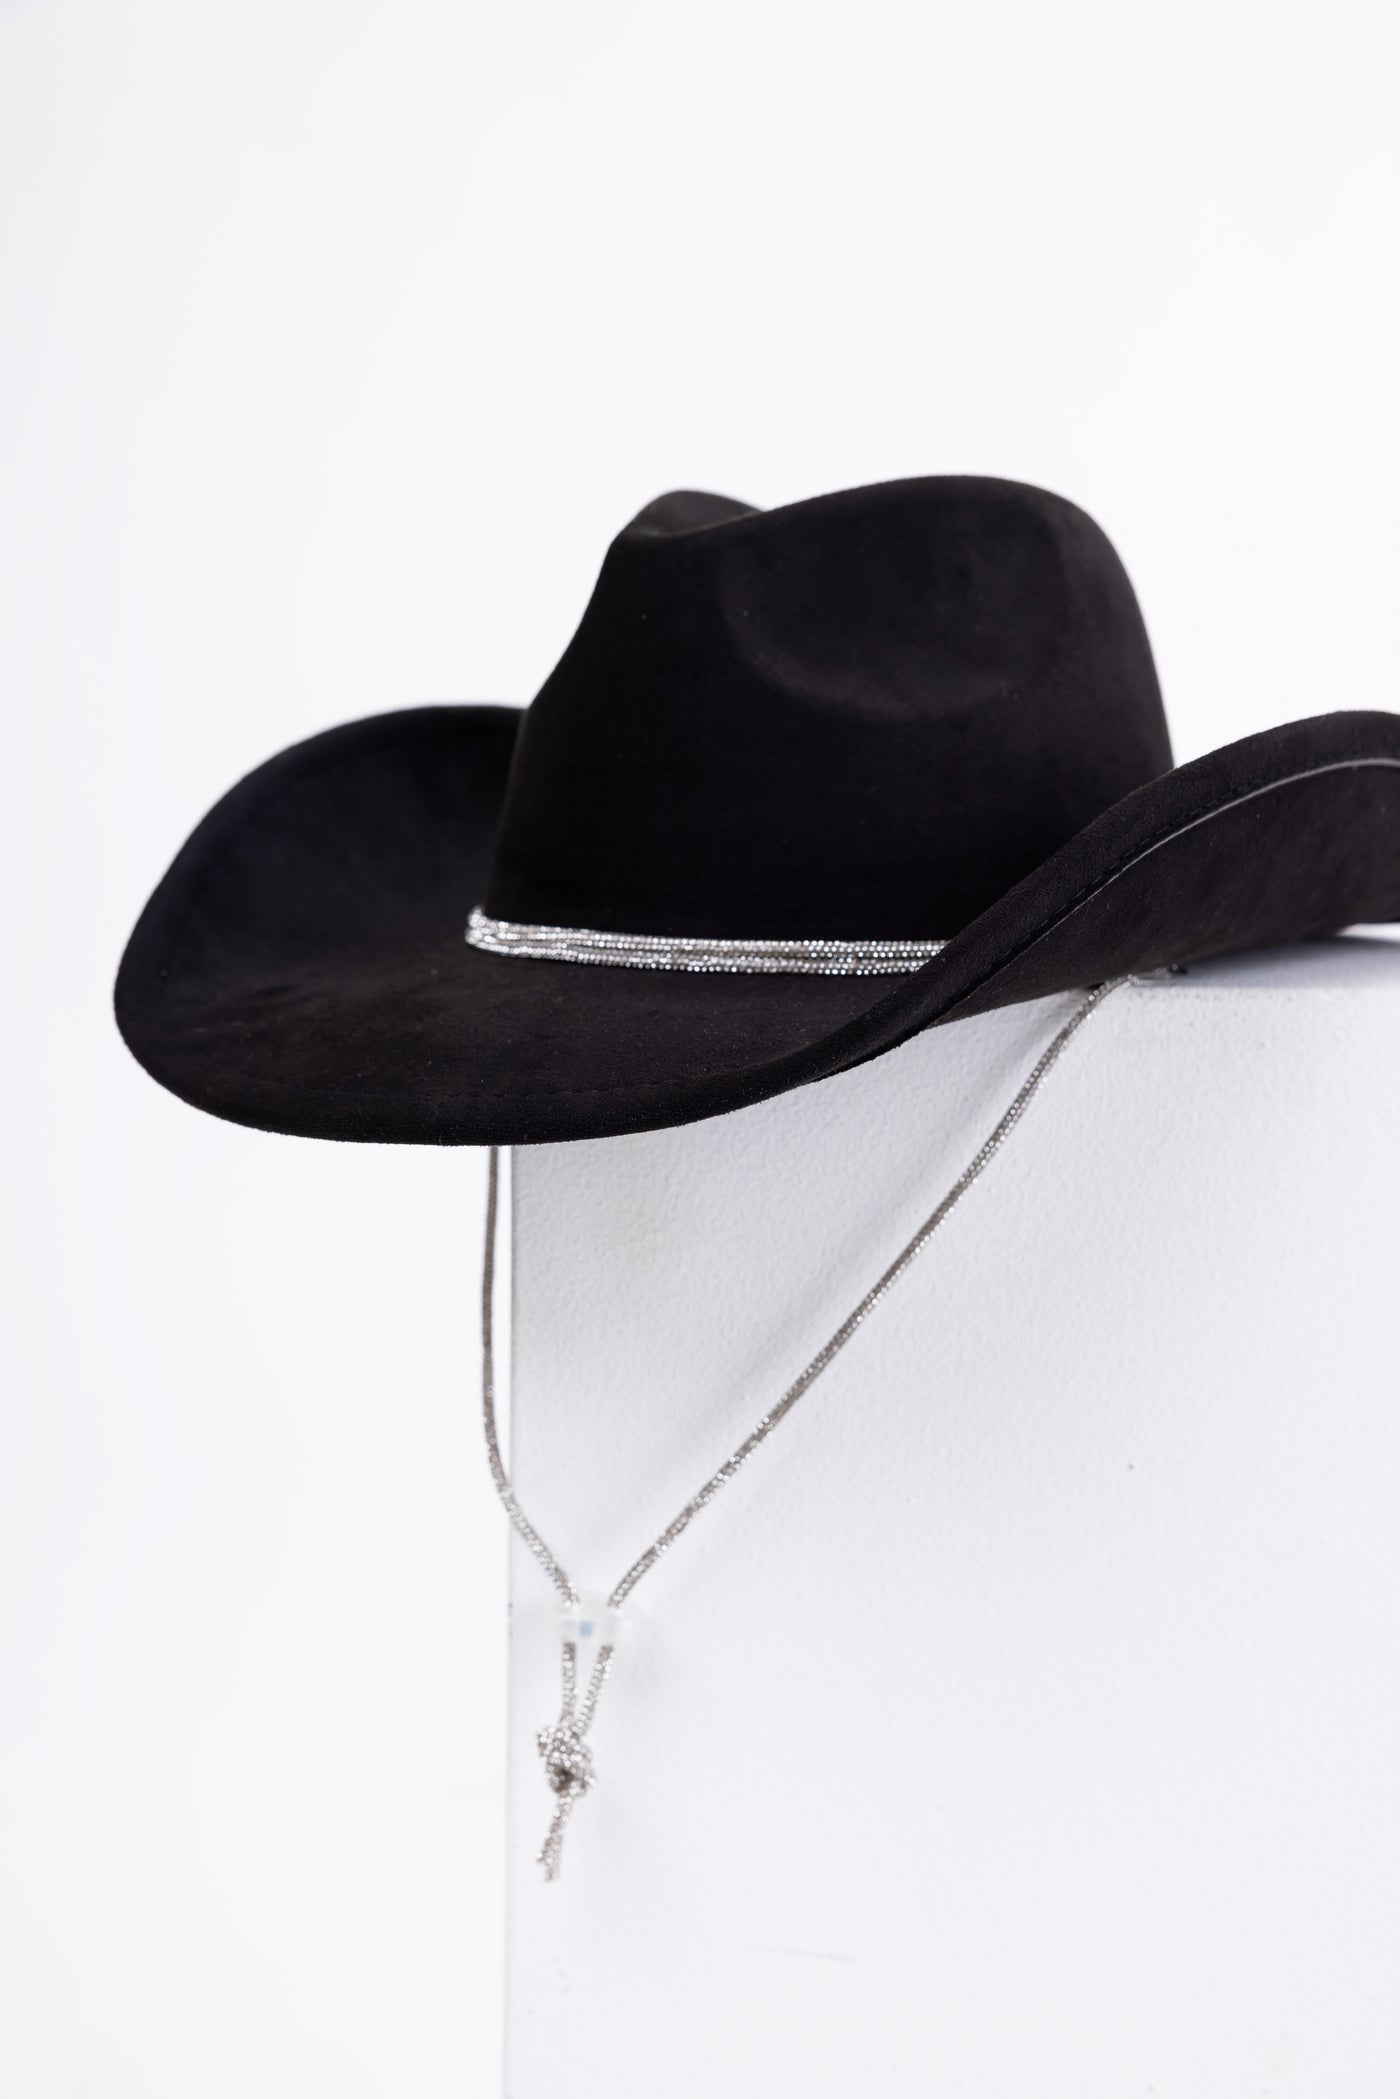 Black Rhinestone Rope Strap Faux Suede Cowboy Hat